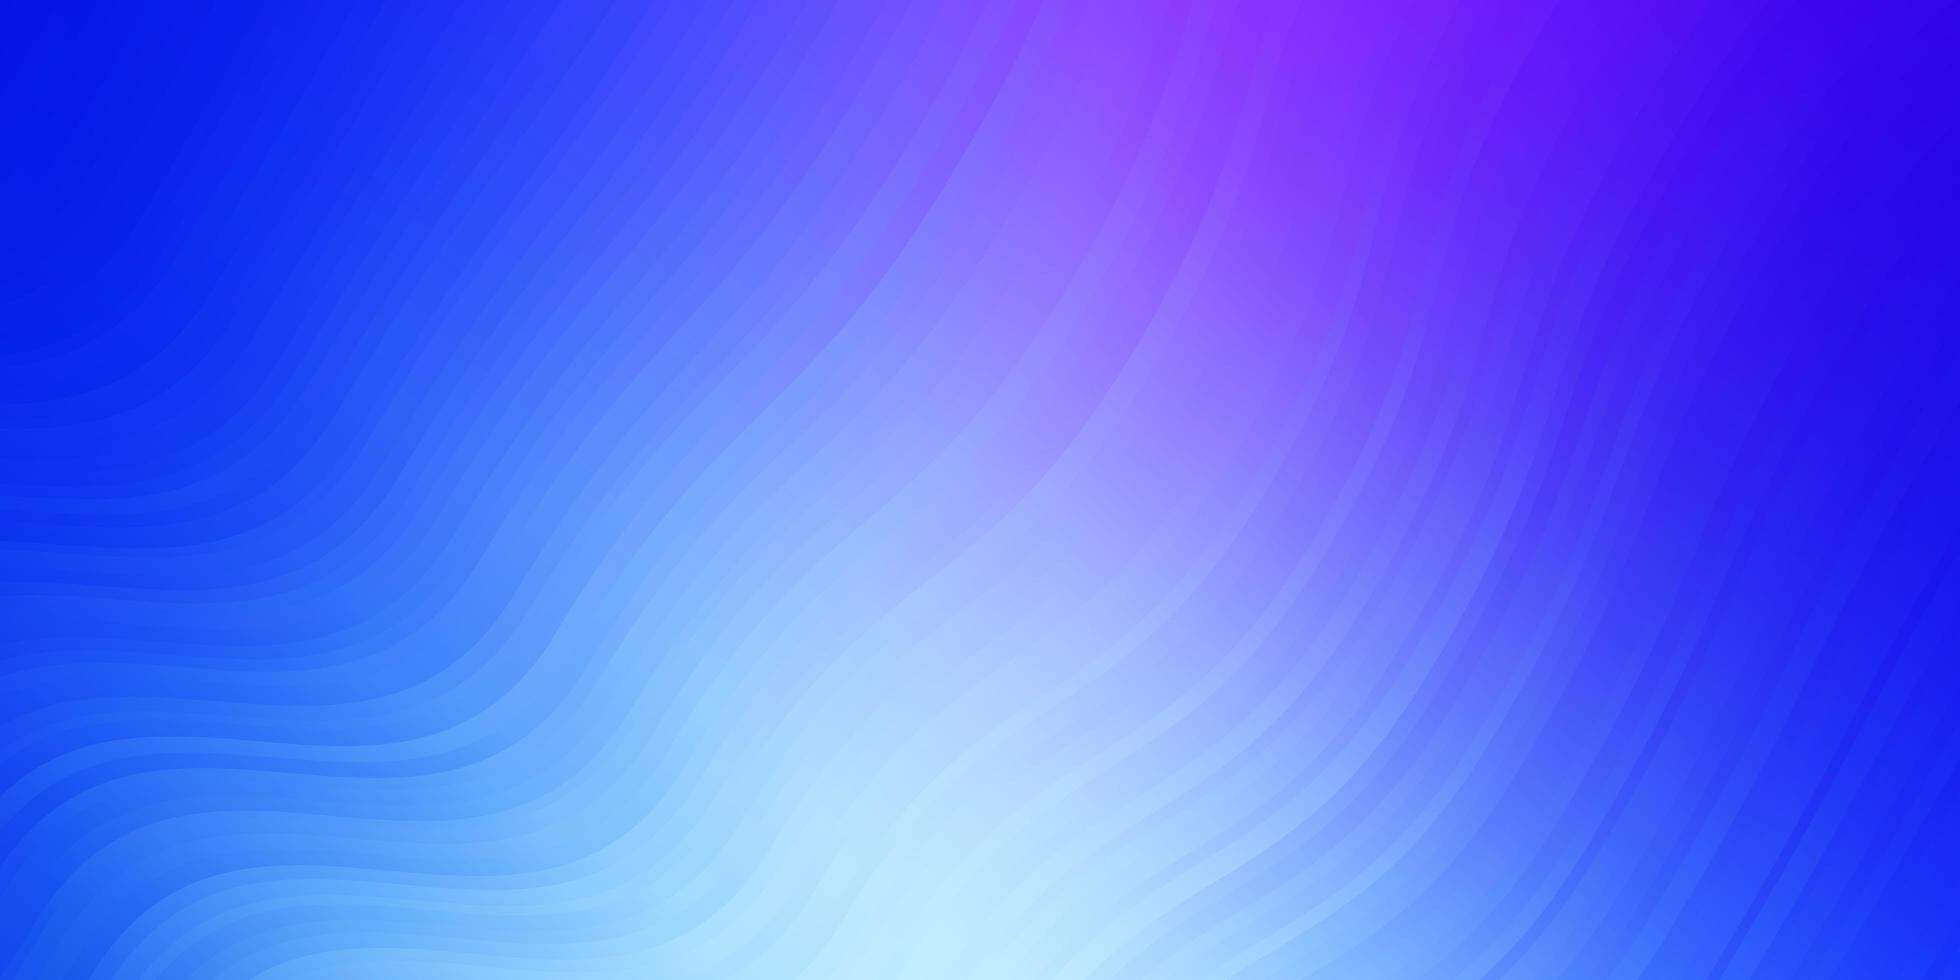 modèle vectoriel rose clair, bleu avec des lignes courbes.